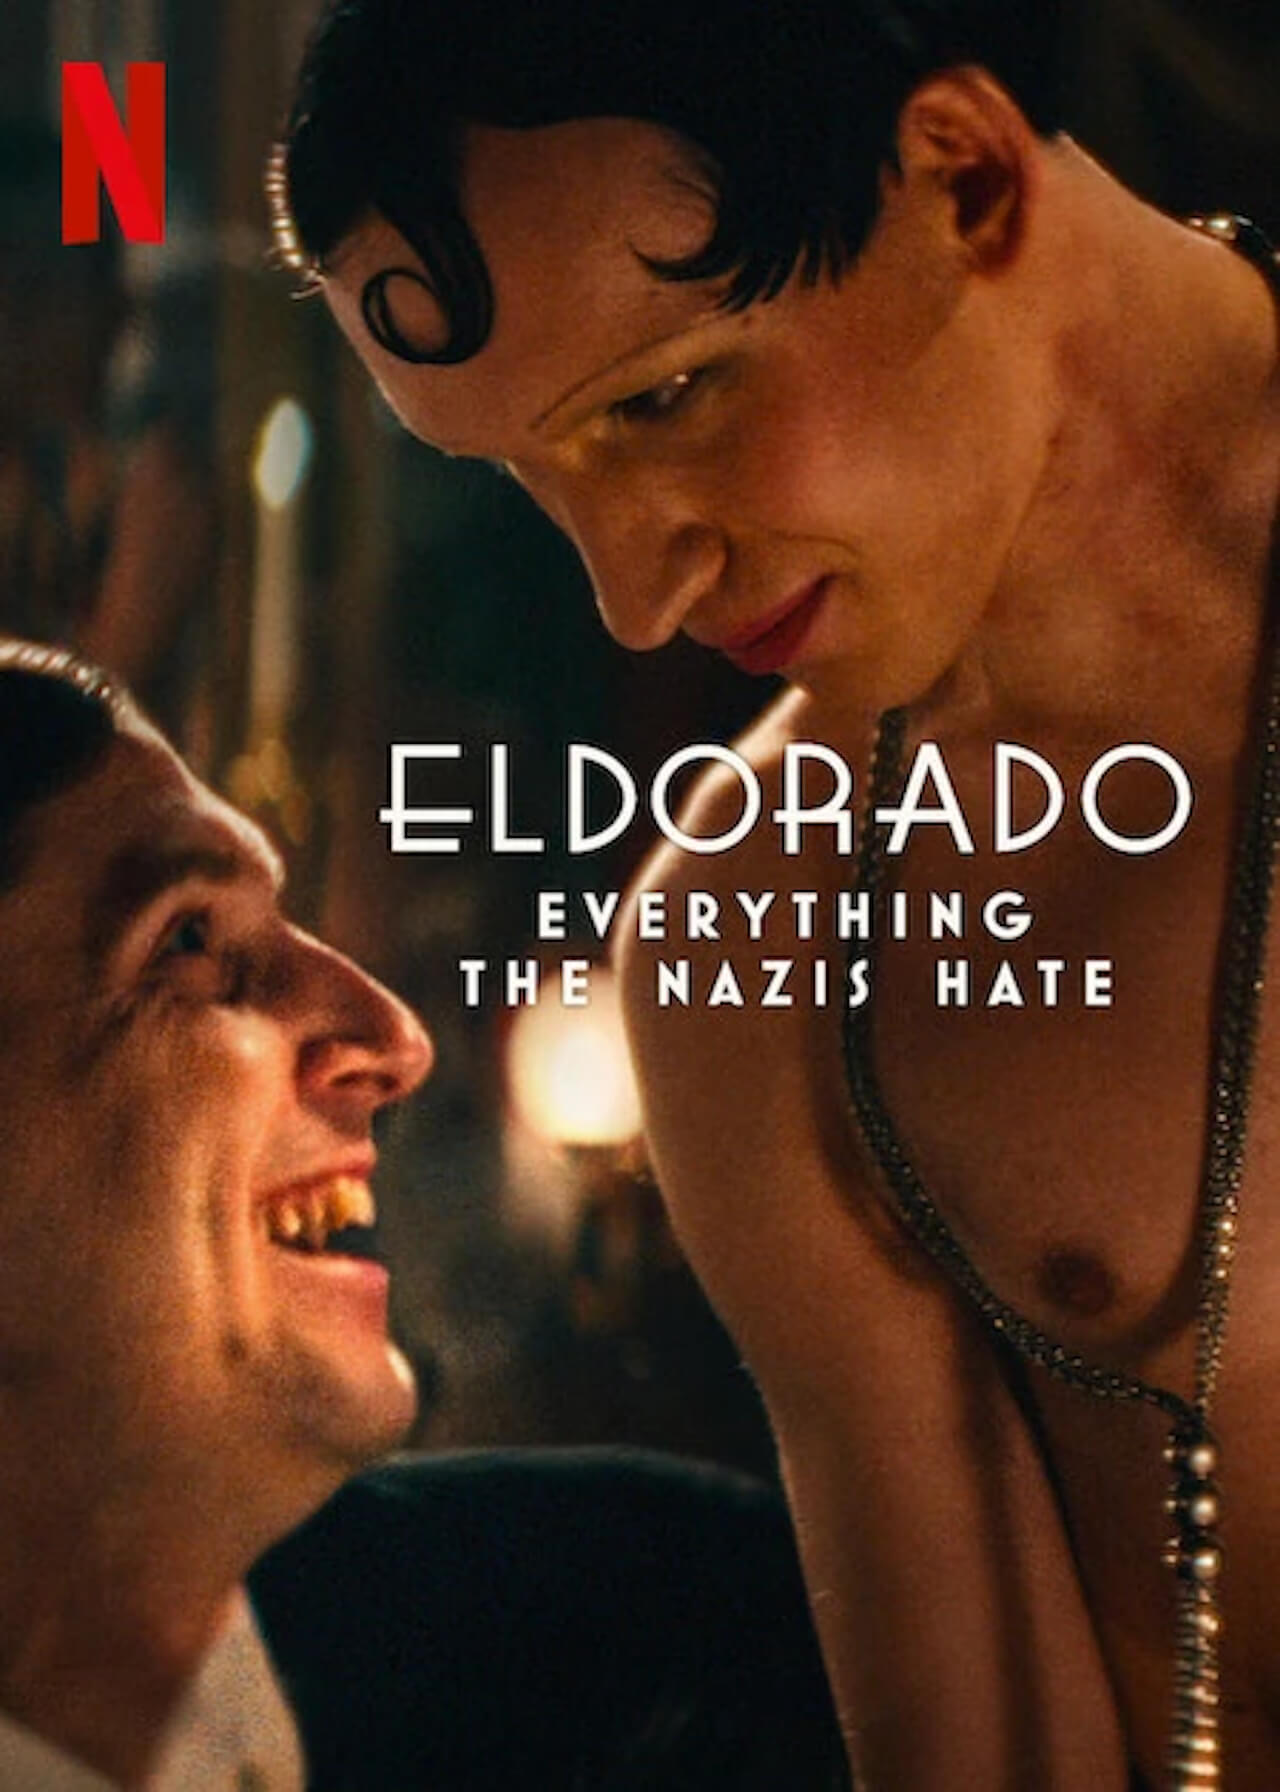 Il documentario Eldorado (2023), disponibile su Netflix, racconta la vita delle persone queer nella Germania di Weimar e sotto la dittatura nazista. Esso esplora, in particolare, le vicende de l’Eldorado, un locale notturno di Berlino, dai “dorati anni Venti” alla tragedia del regime hitleriano.